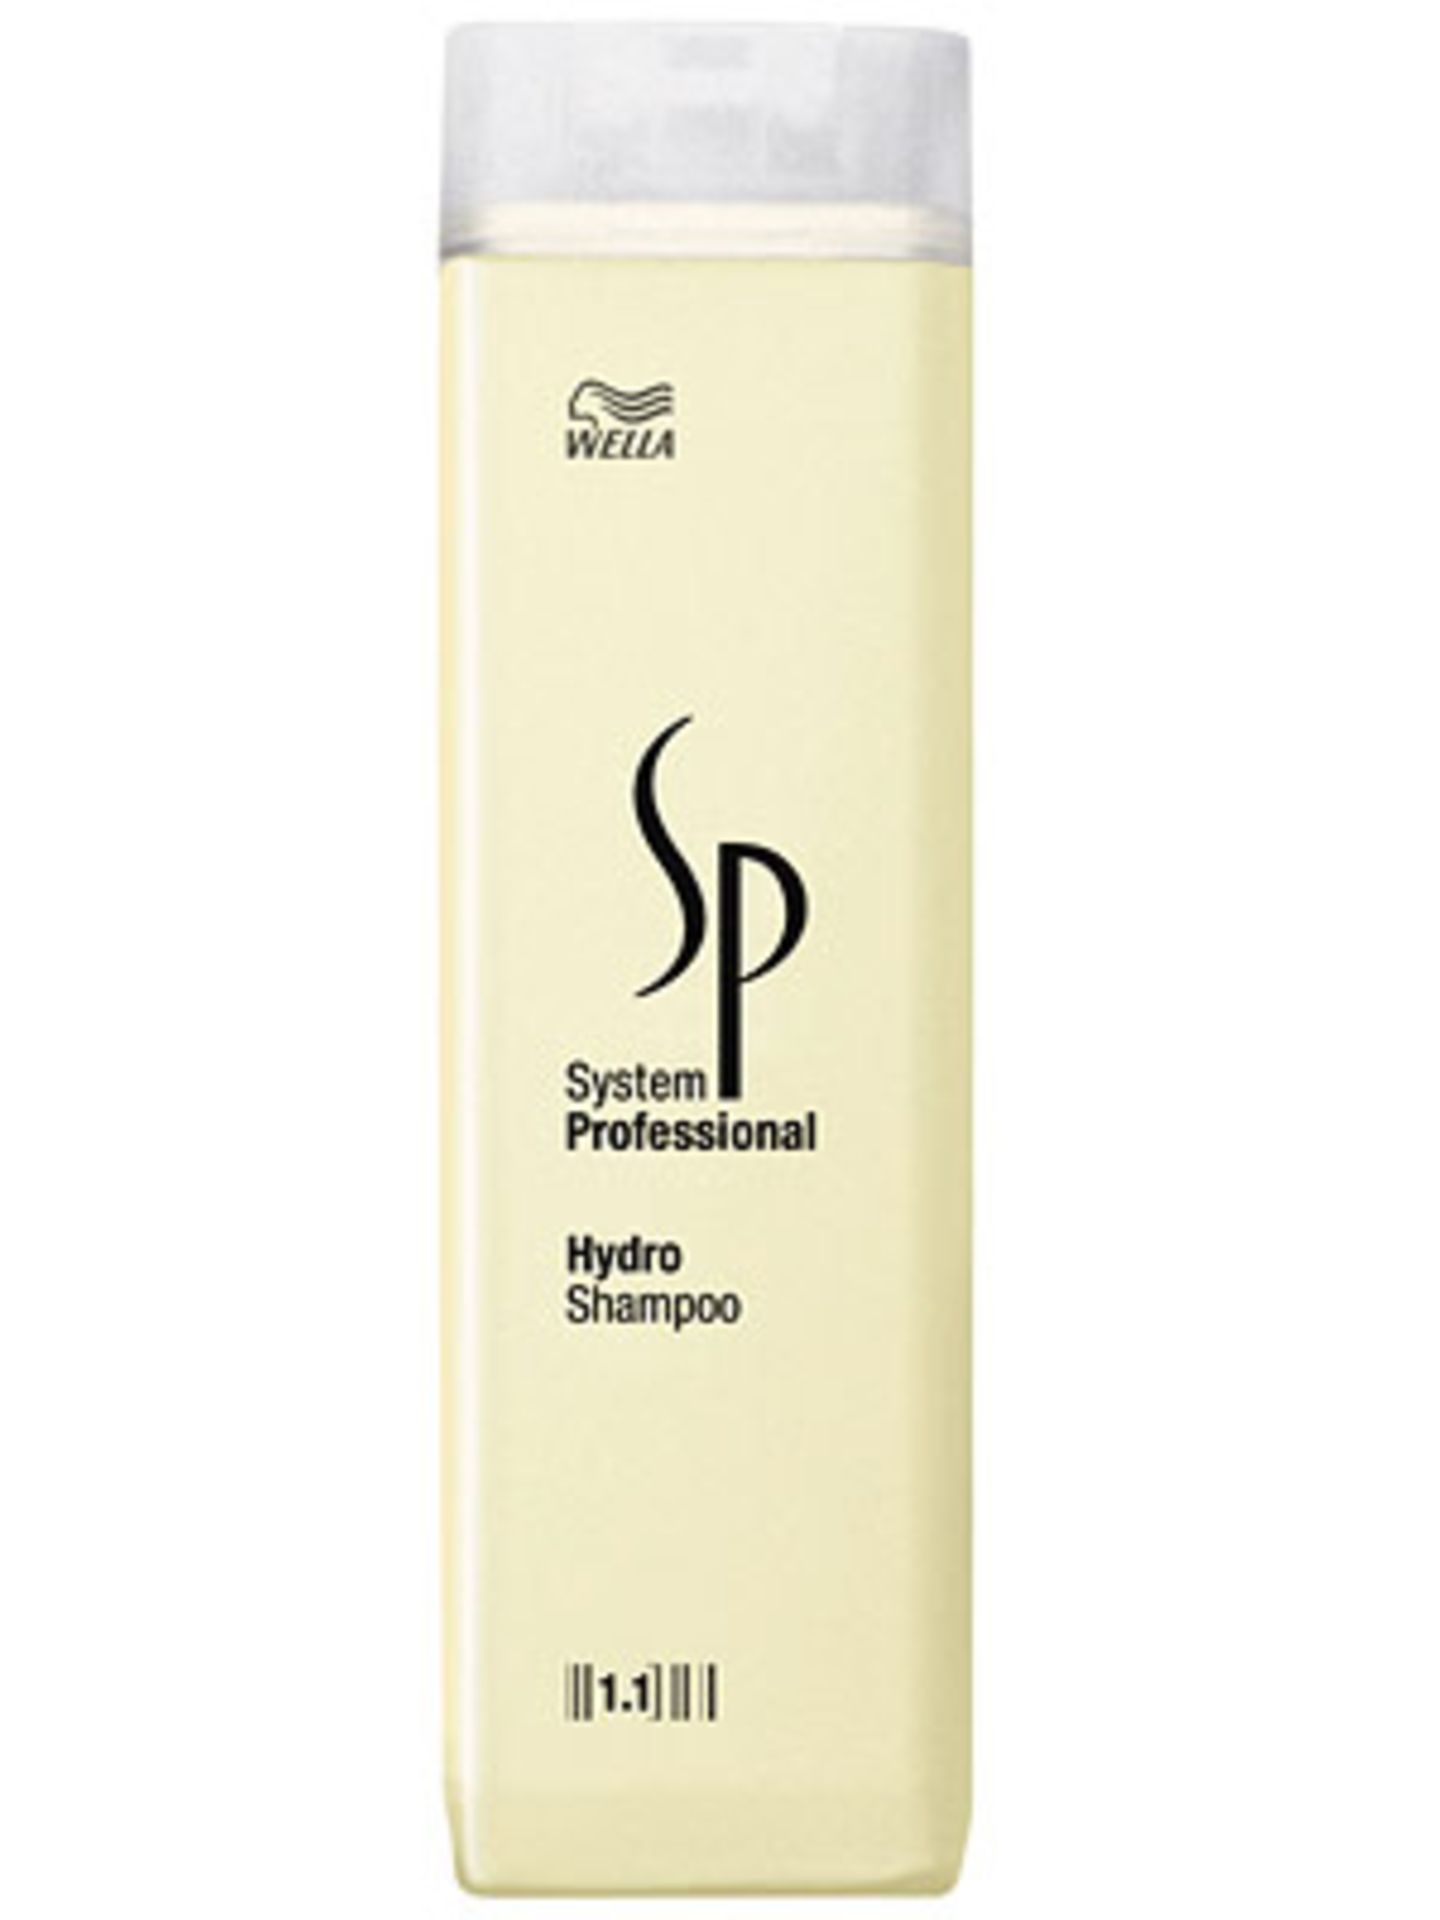 Vitalisierendes Shampoo von System Professional, um 13 Euro.